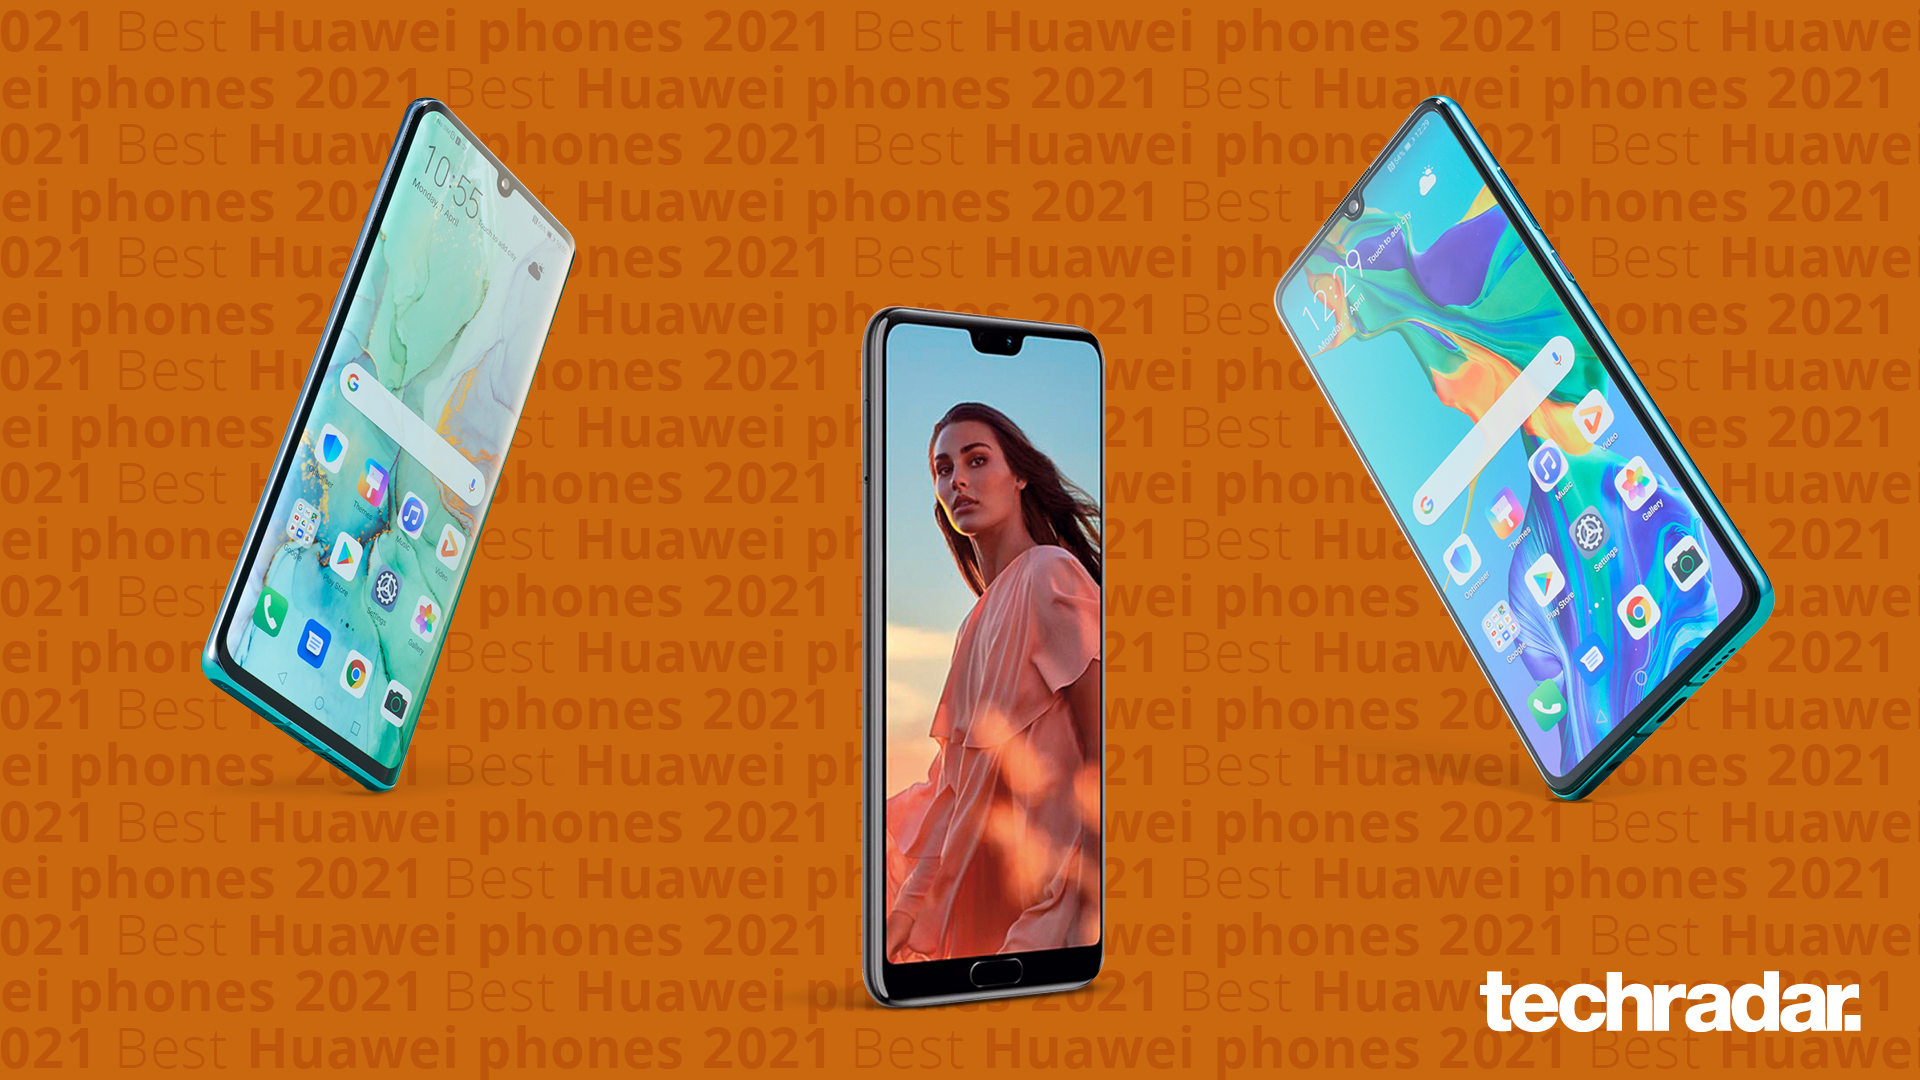 Oprichter Getuigen vocaal Beste Huawei smartphones 2021 | TechRadar